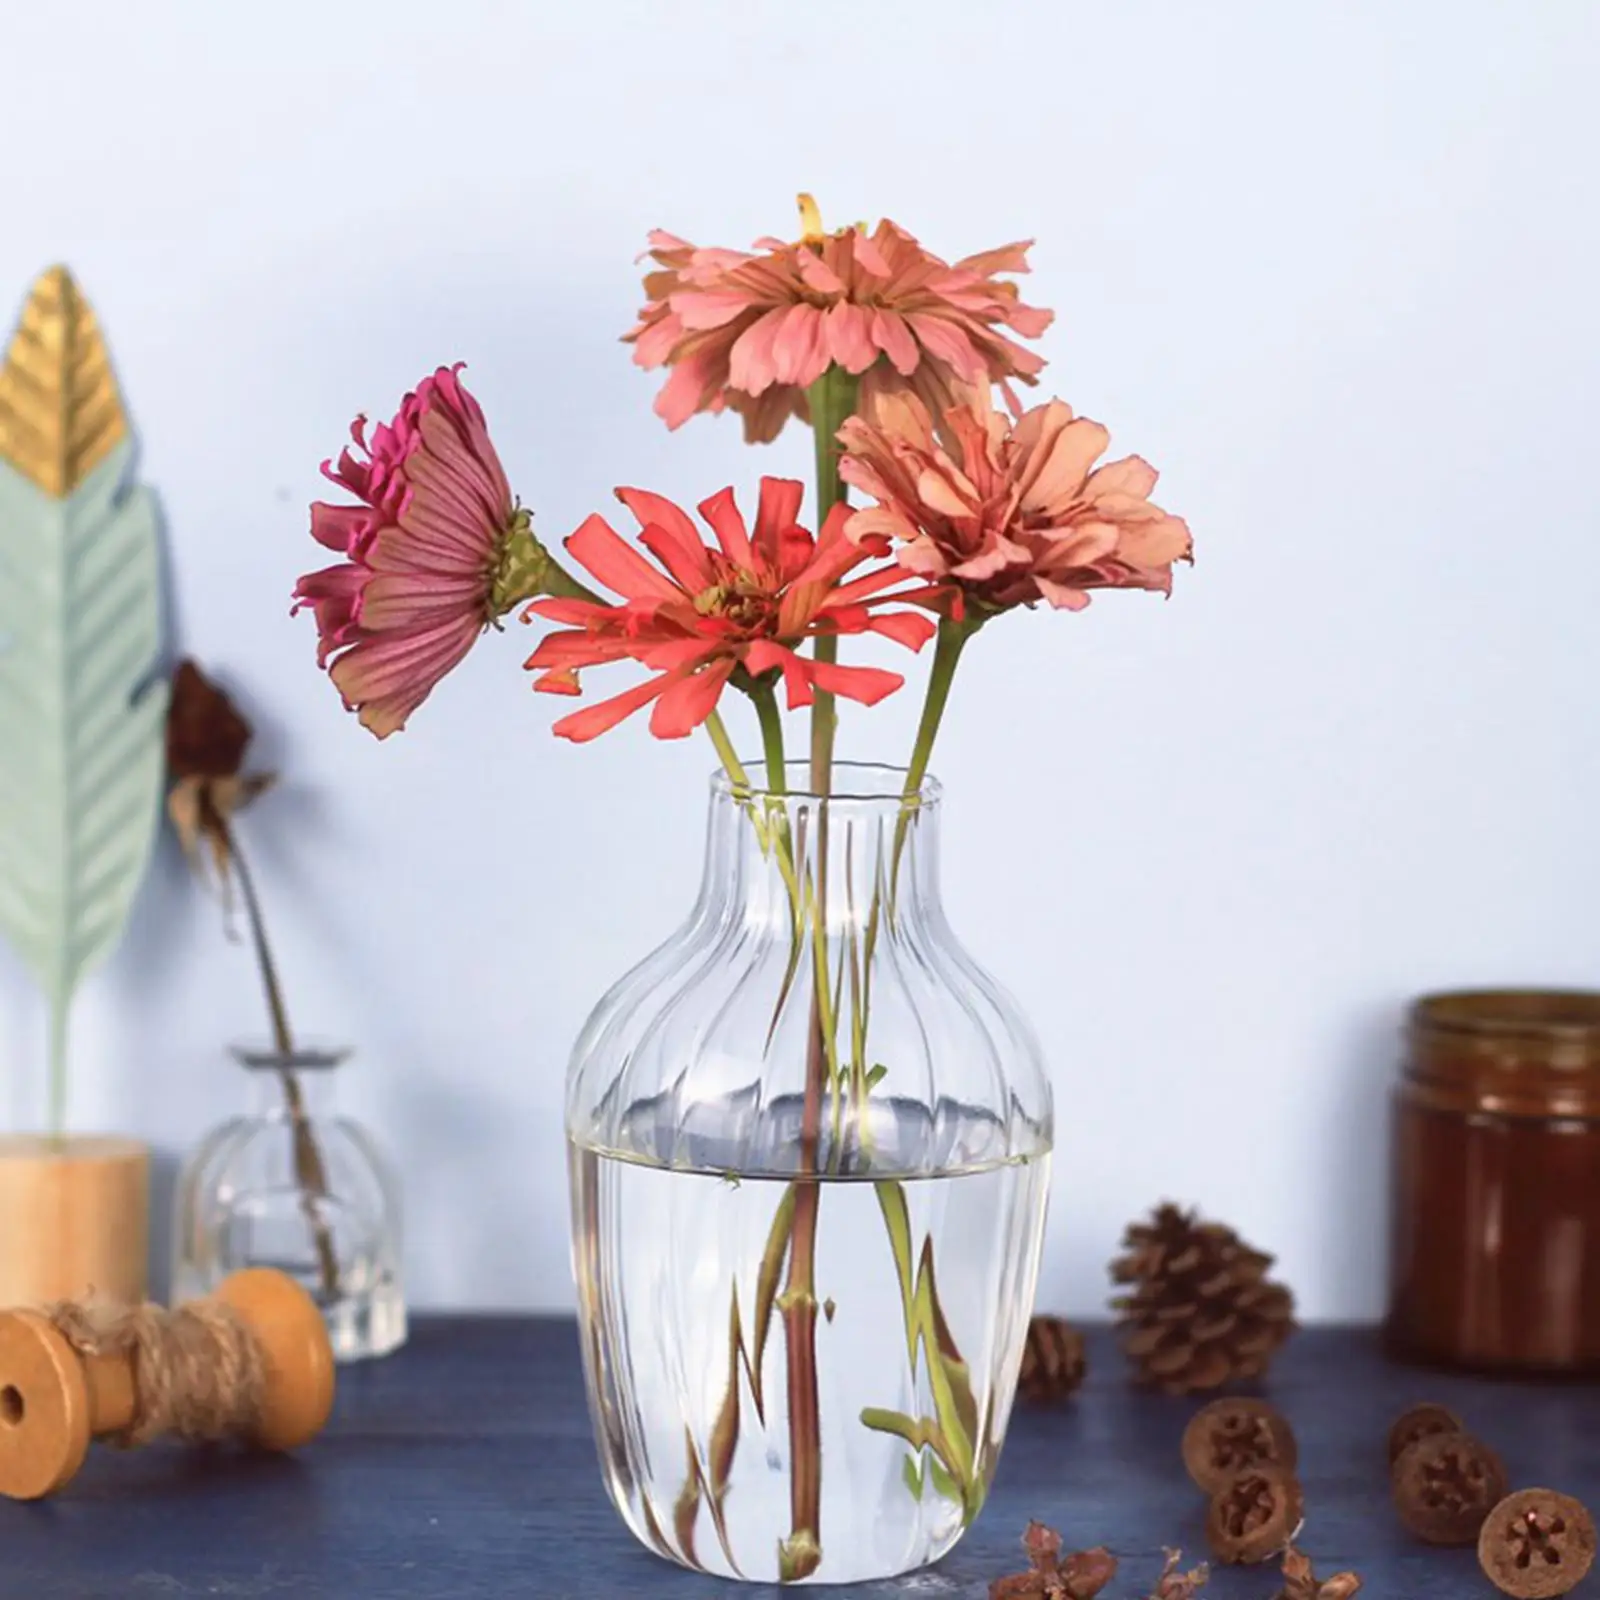 Glass Bud Vases Flower Arrangements Flowerpots for Bedroom Festivals Gift